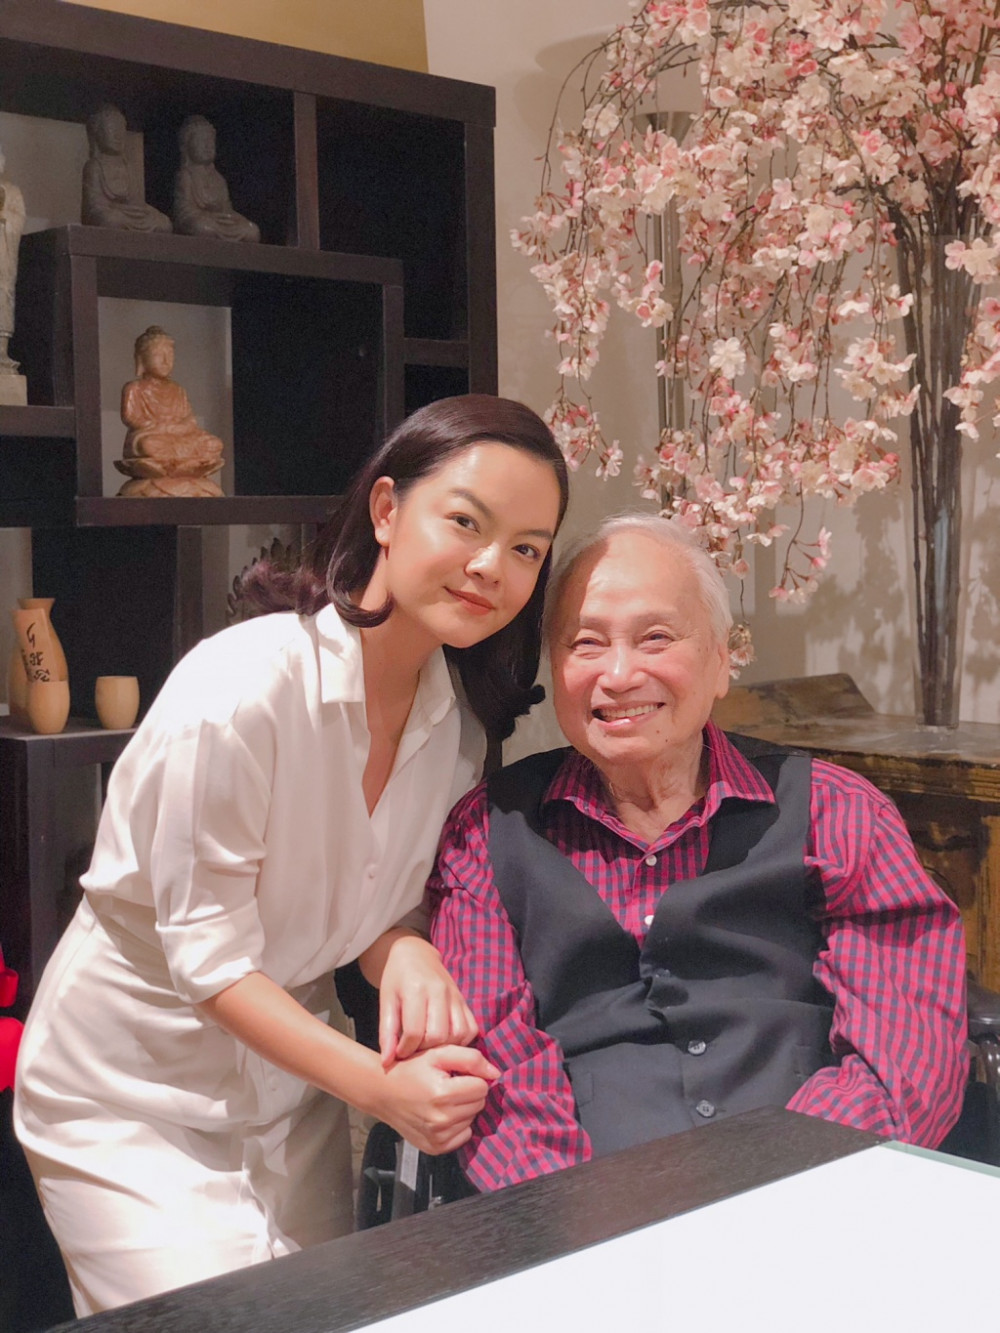 Ca sĩ Phạm Quỳnh Anh đến thăm nhạc sĩ Lam Phương khi đến Mỹ cách đây vài năm